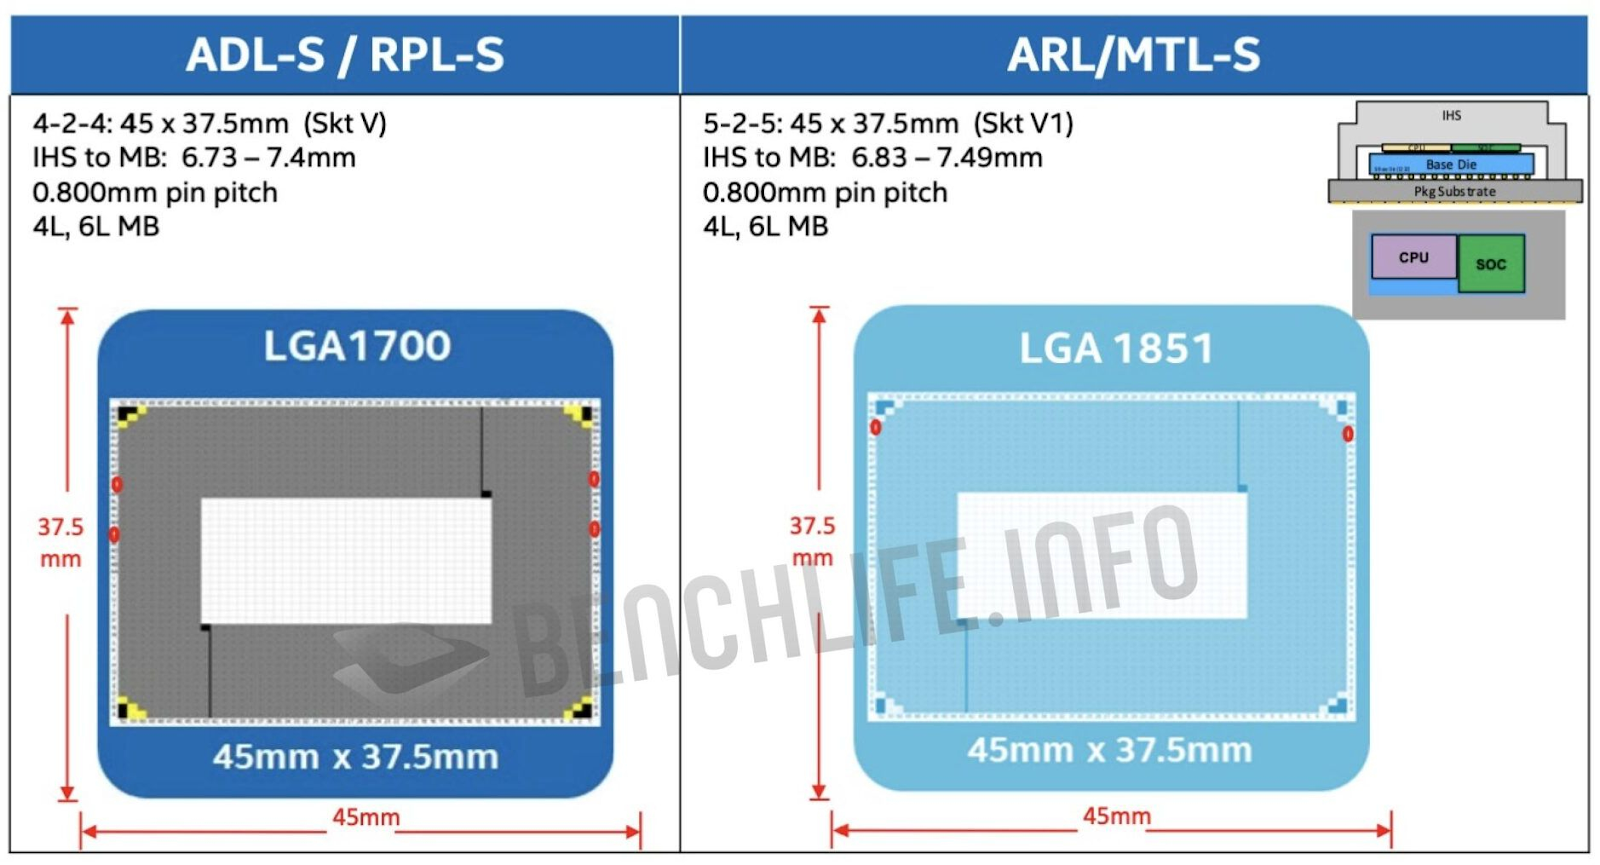 Intel решила сохранить размеры посадочного гнезда LGA 1851, как у LGA 1700, ради обратной совместимости со старыми кулерами